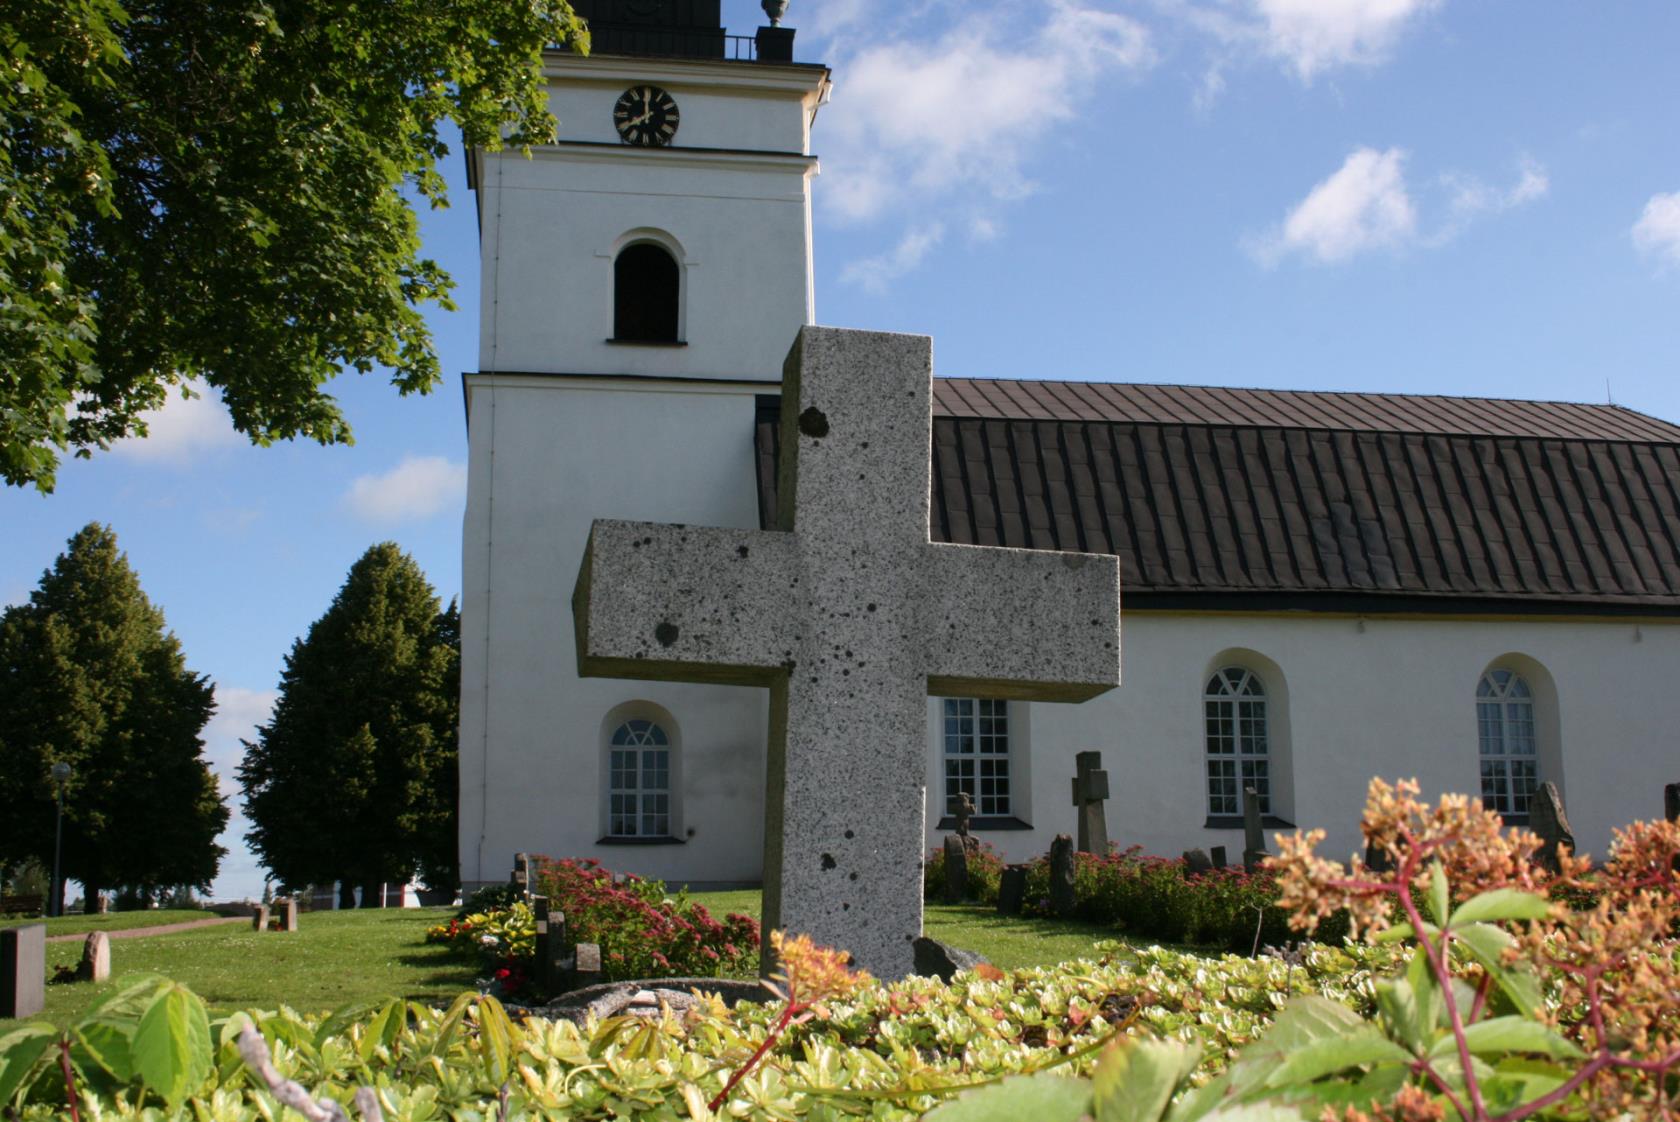 Kolbäcks kyrka är en av fem kyrkor församlingen. Kyrkan ligger där Kolbäcksån formar en s-kurva.